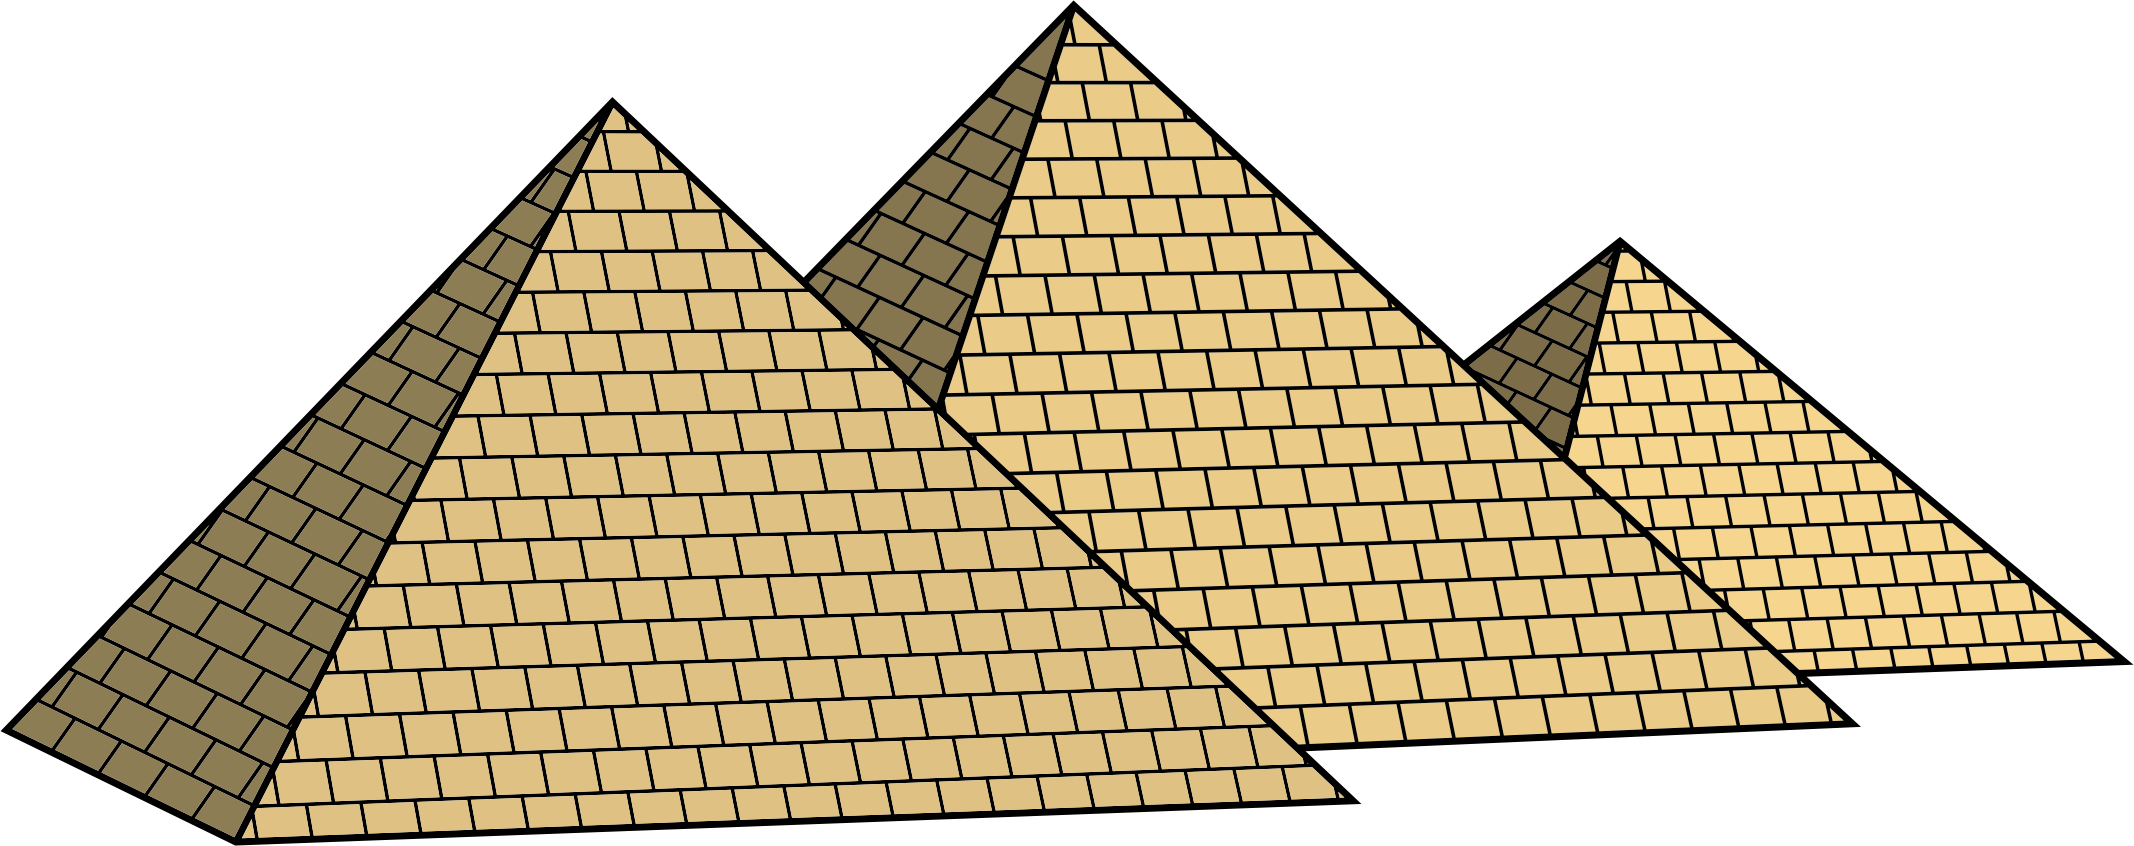 Egypt Пирамида PNG Images HD